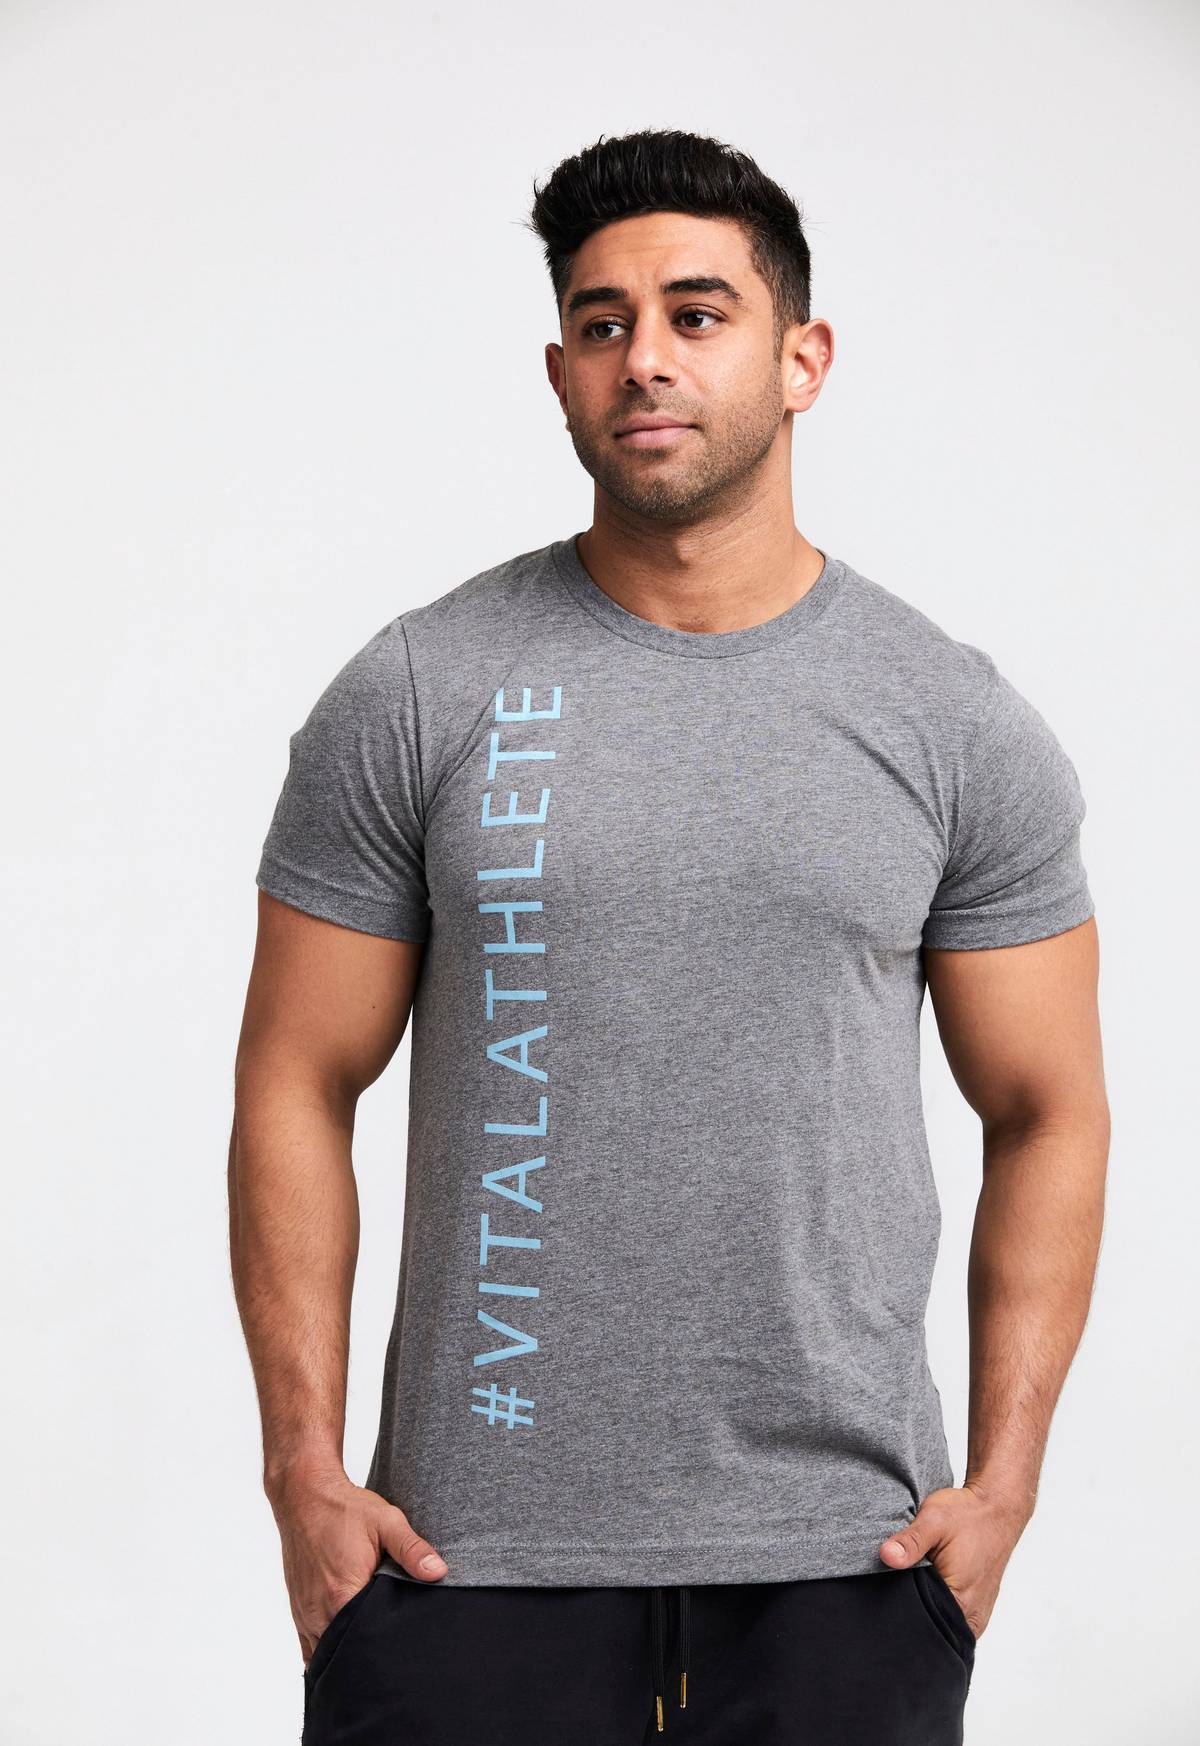 Alphalete Activewear shirt., Men's Fashion, Activewear on Carousell